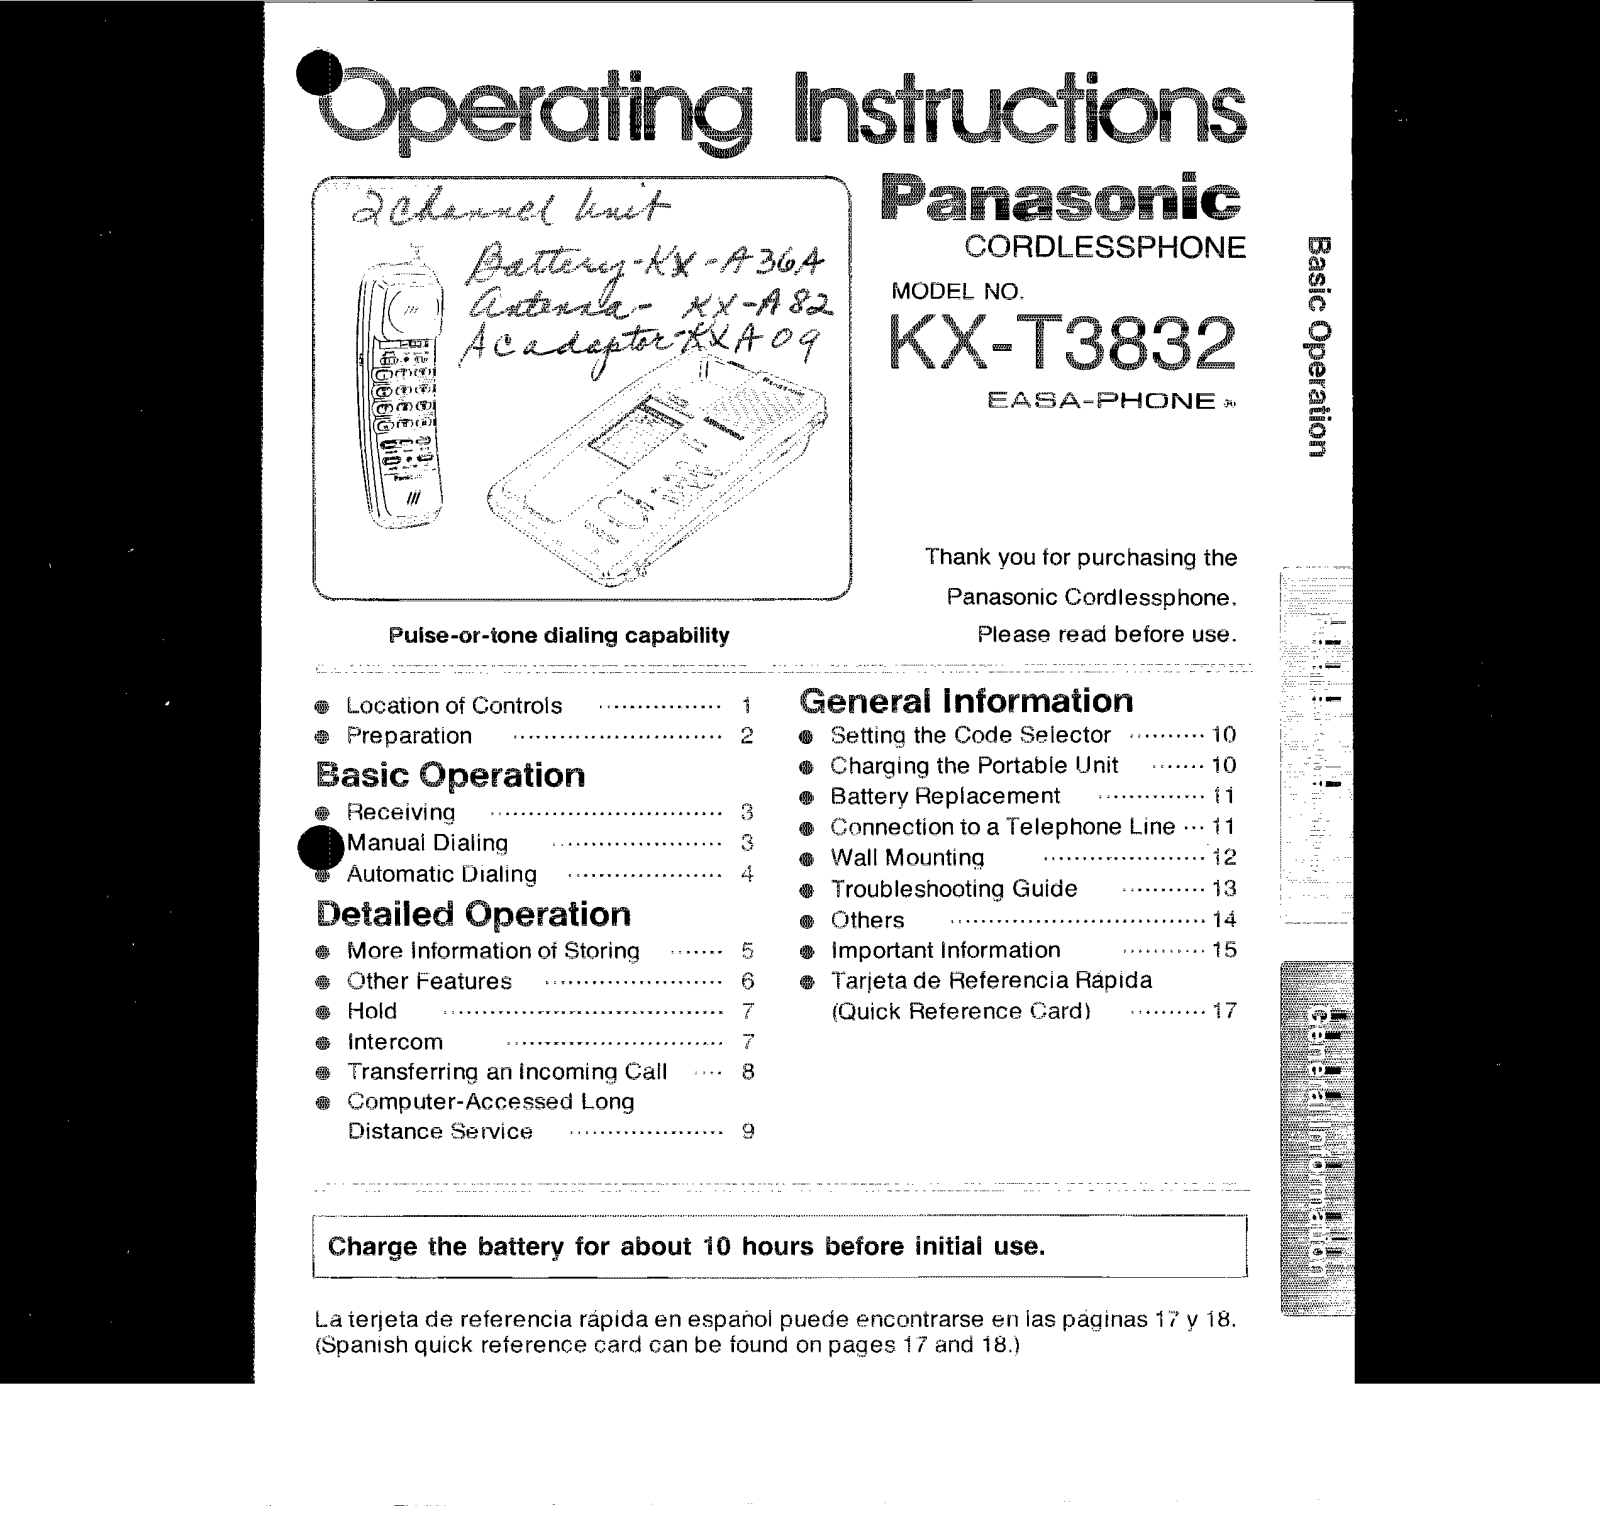 Panasonic kx-t3832 Operation Manual